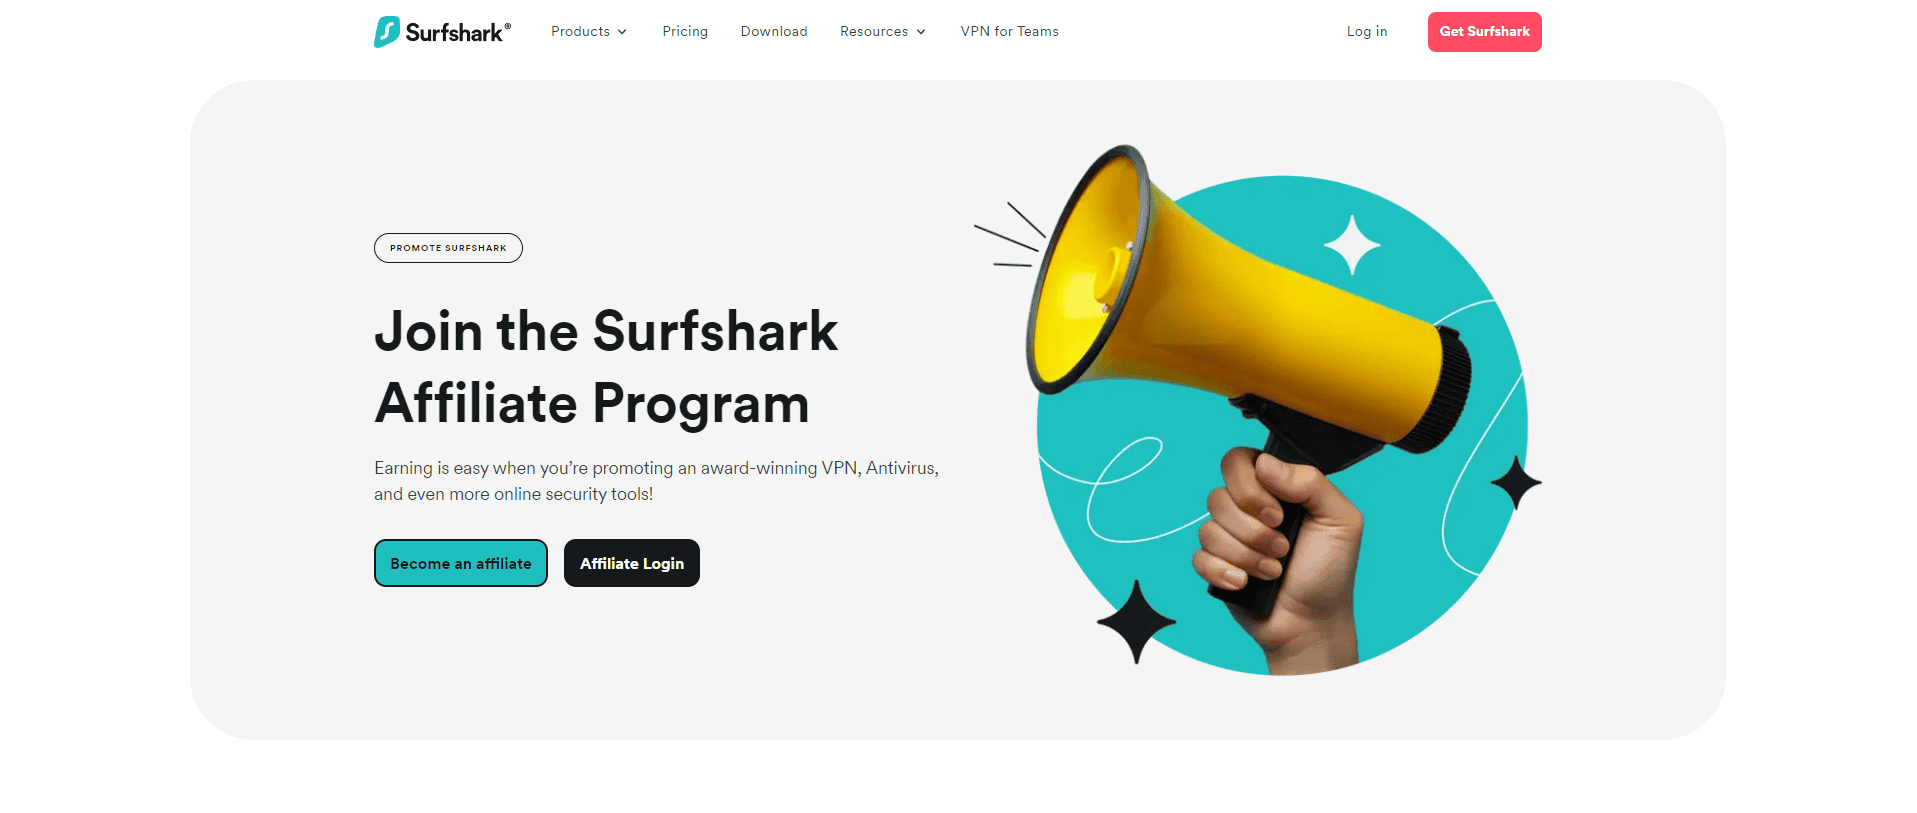 Surfshark Affiliate Program